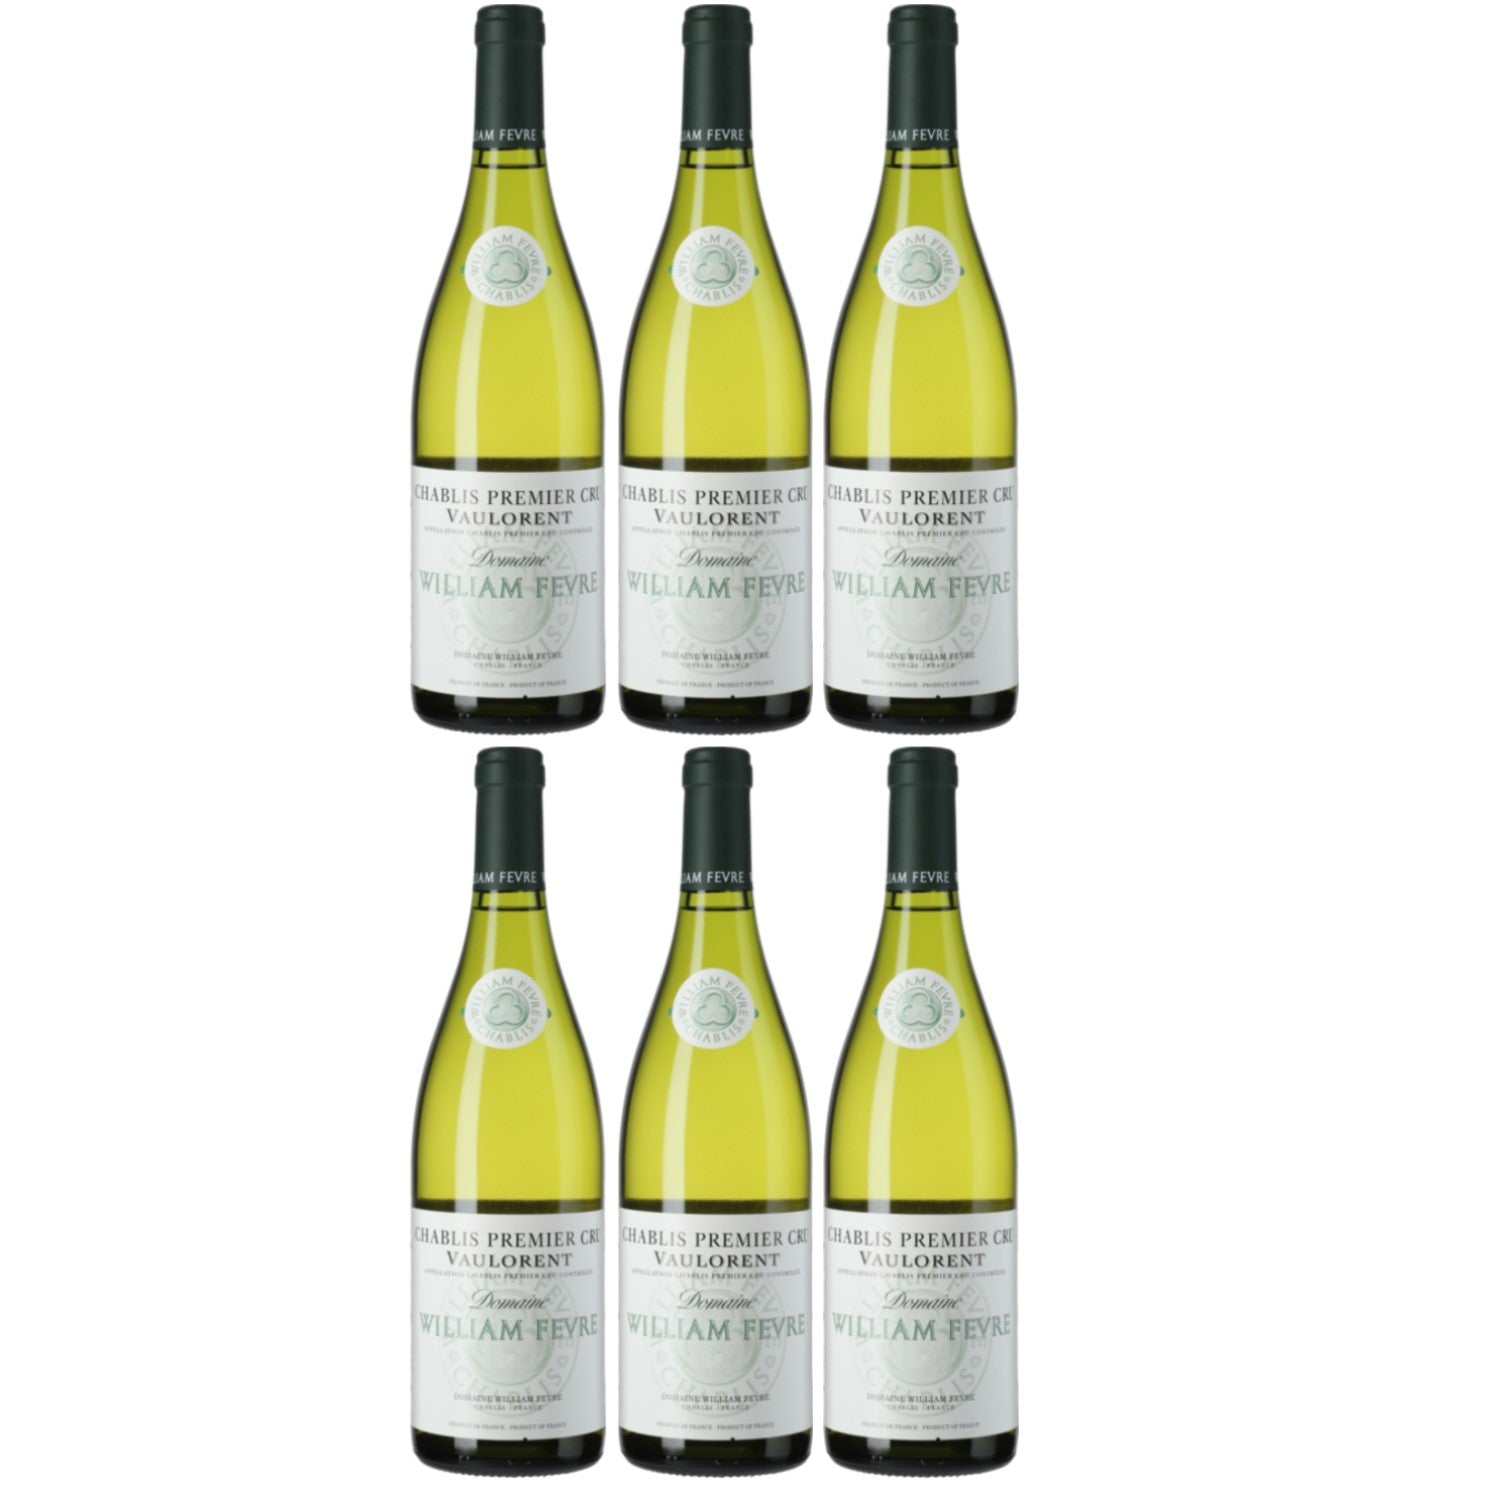 Domaine William Fèvre Chablis Weißwein Wein fruchtig trocken AOC Frankreich (6 x 0.75l) - Versanel -